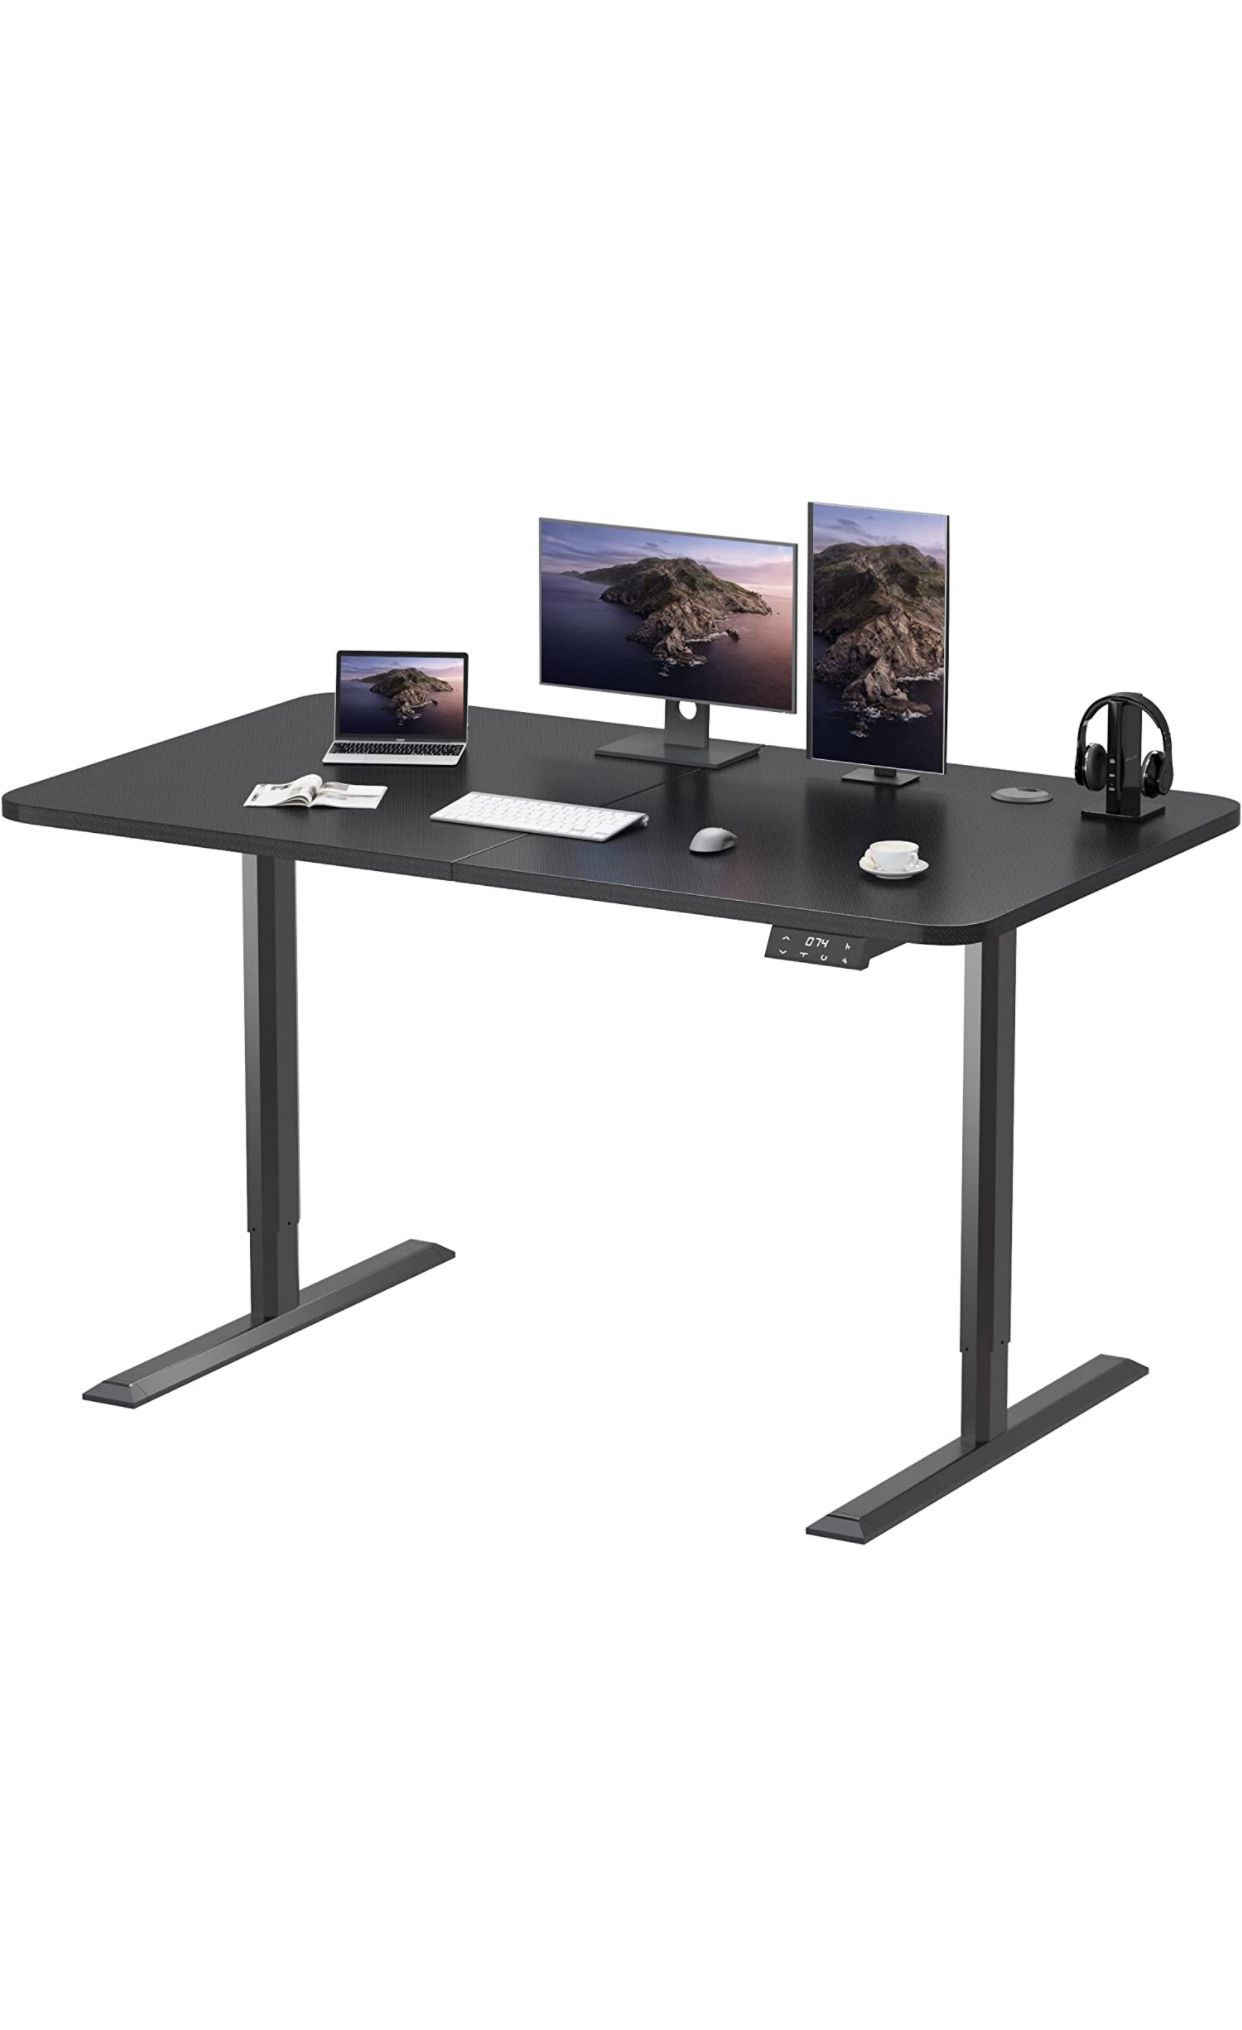 Standing Desk 55" Electric Adjustable Desk Large Sit Stand Up Desk Home Office Computer Desk Memory Preset with T-Shaped Black Metal Bracket, Carbon B